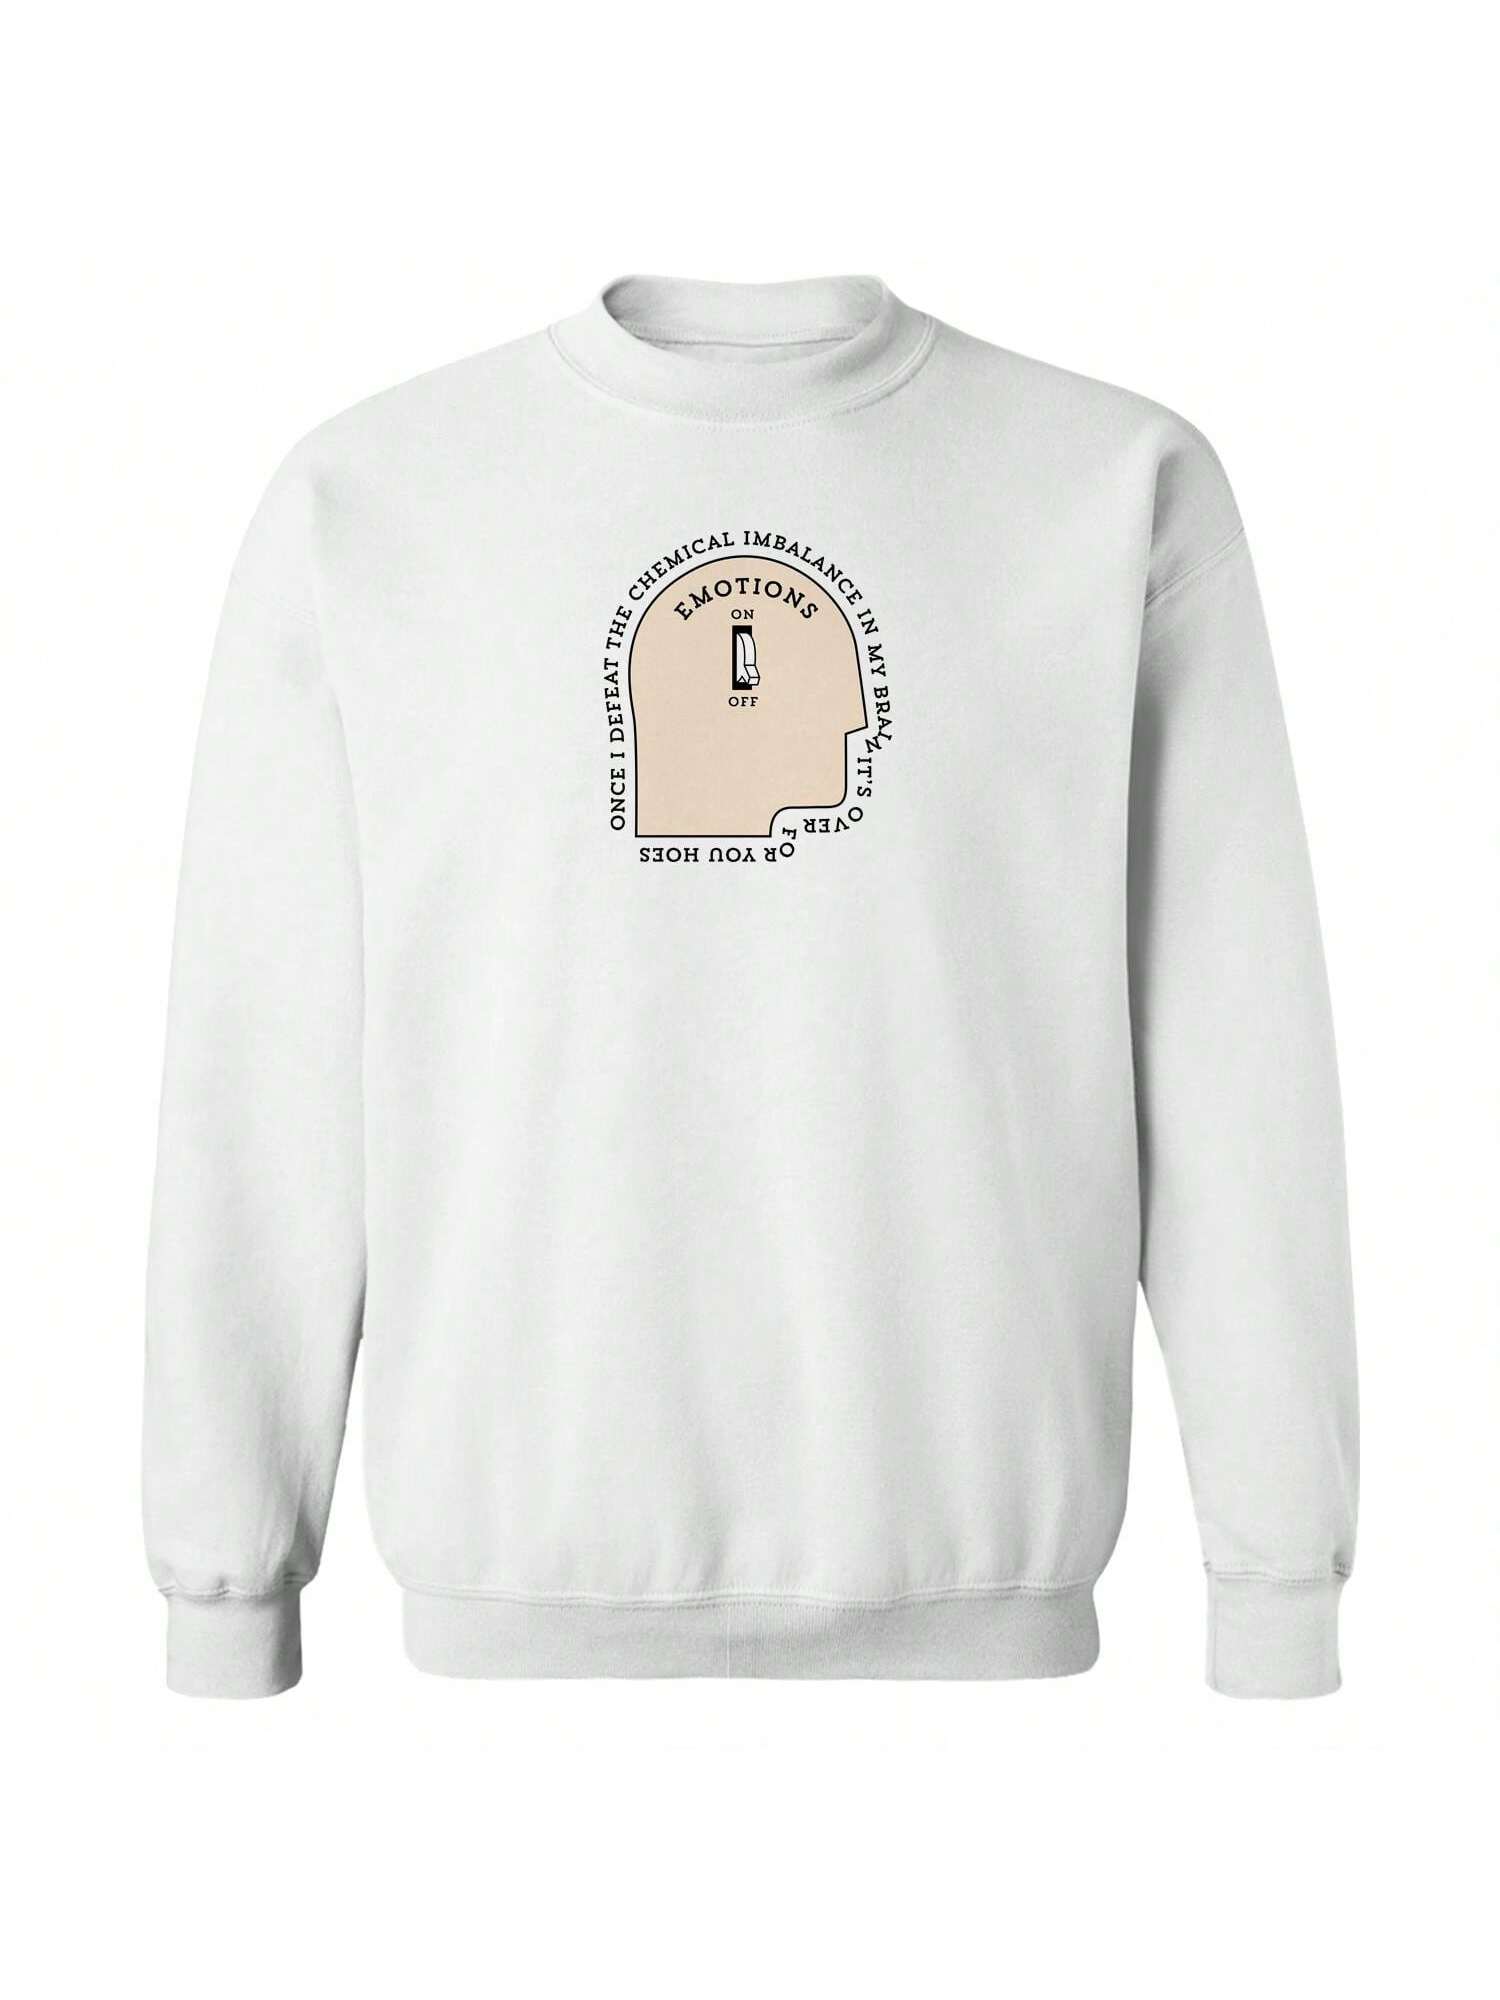 Хлопковый пуловер унисекс с рисунком Pop Creature Chemical Imbalance, белый